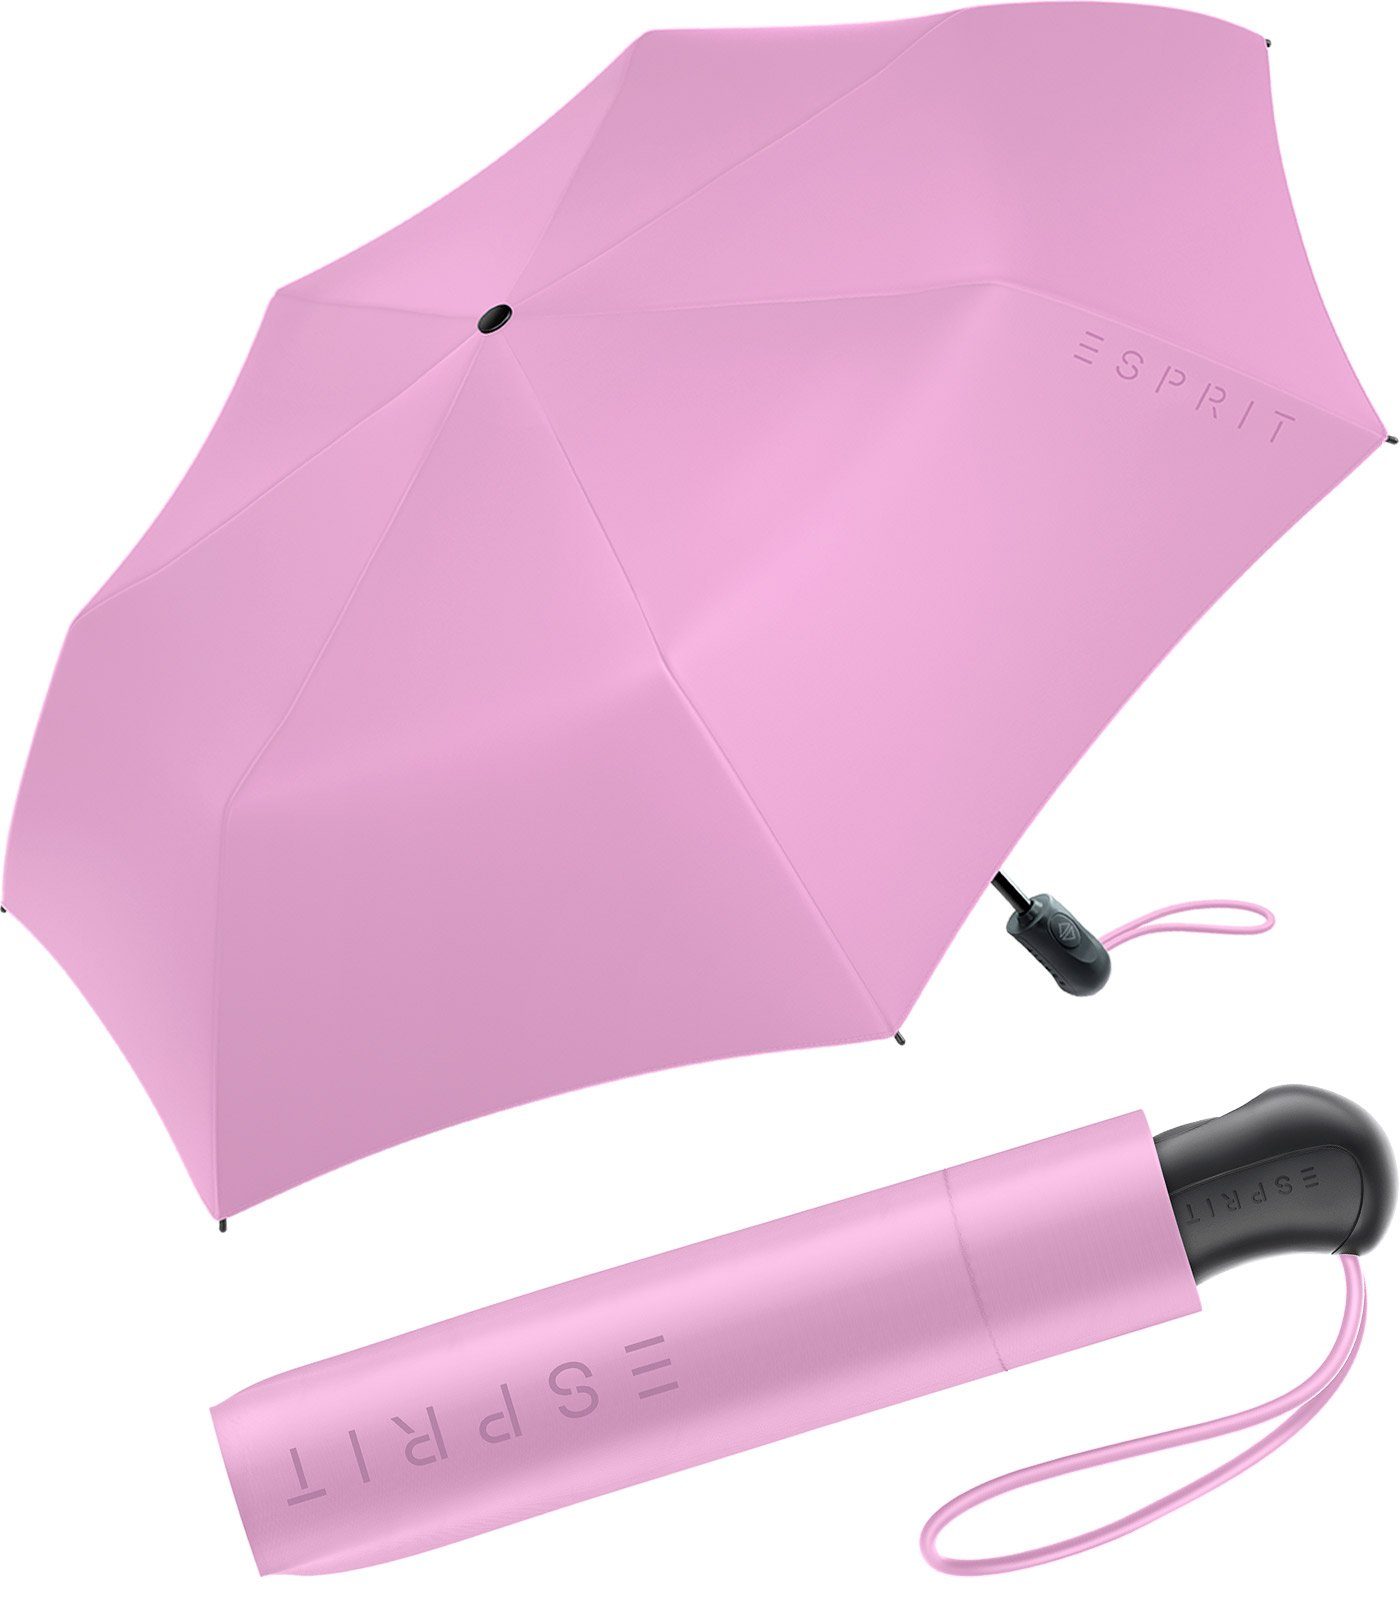 Esprit Taschenregenschirm Damen Easymatic Light Auf-Zu Automatik FJ 2023, stabil und praktisch, in den neuen Trendfarben violett